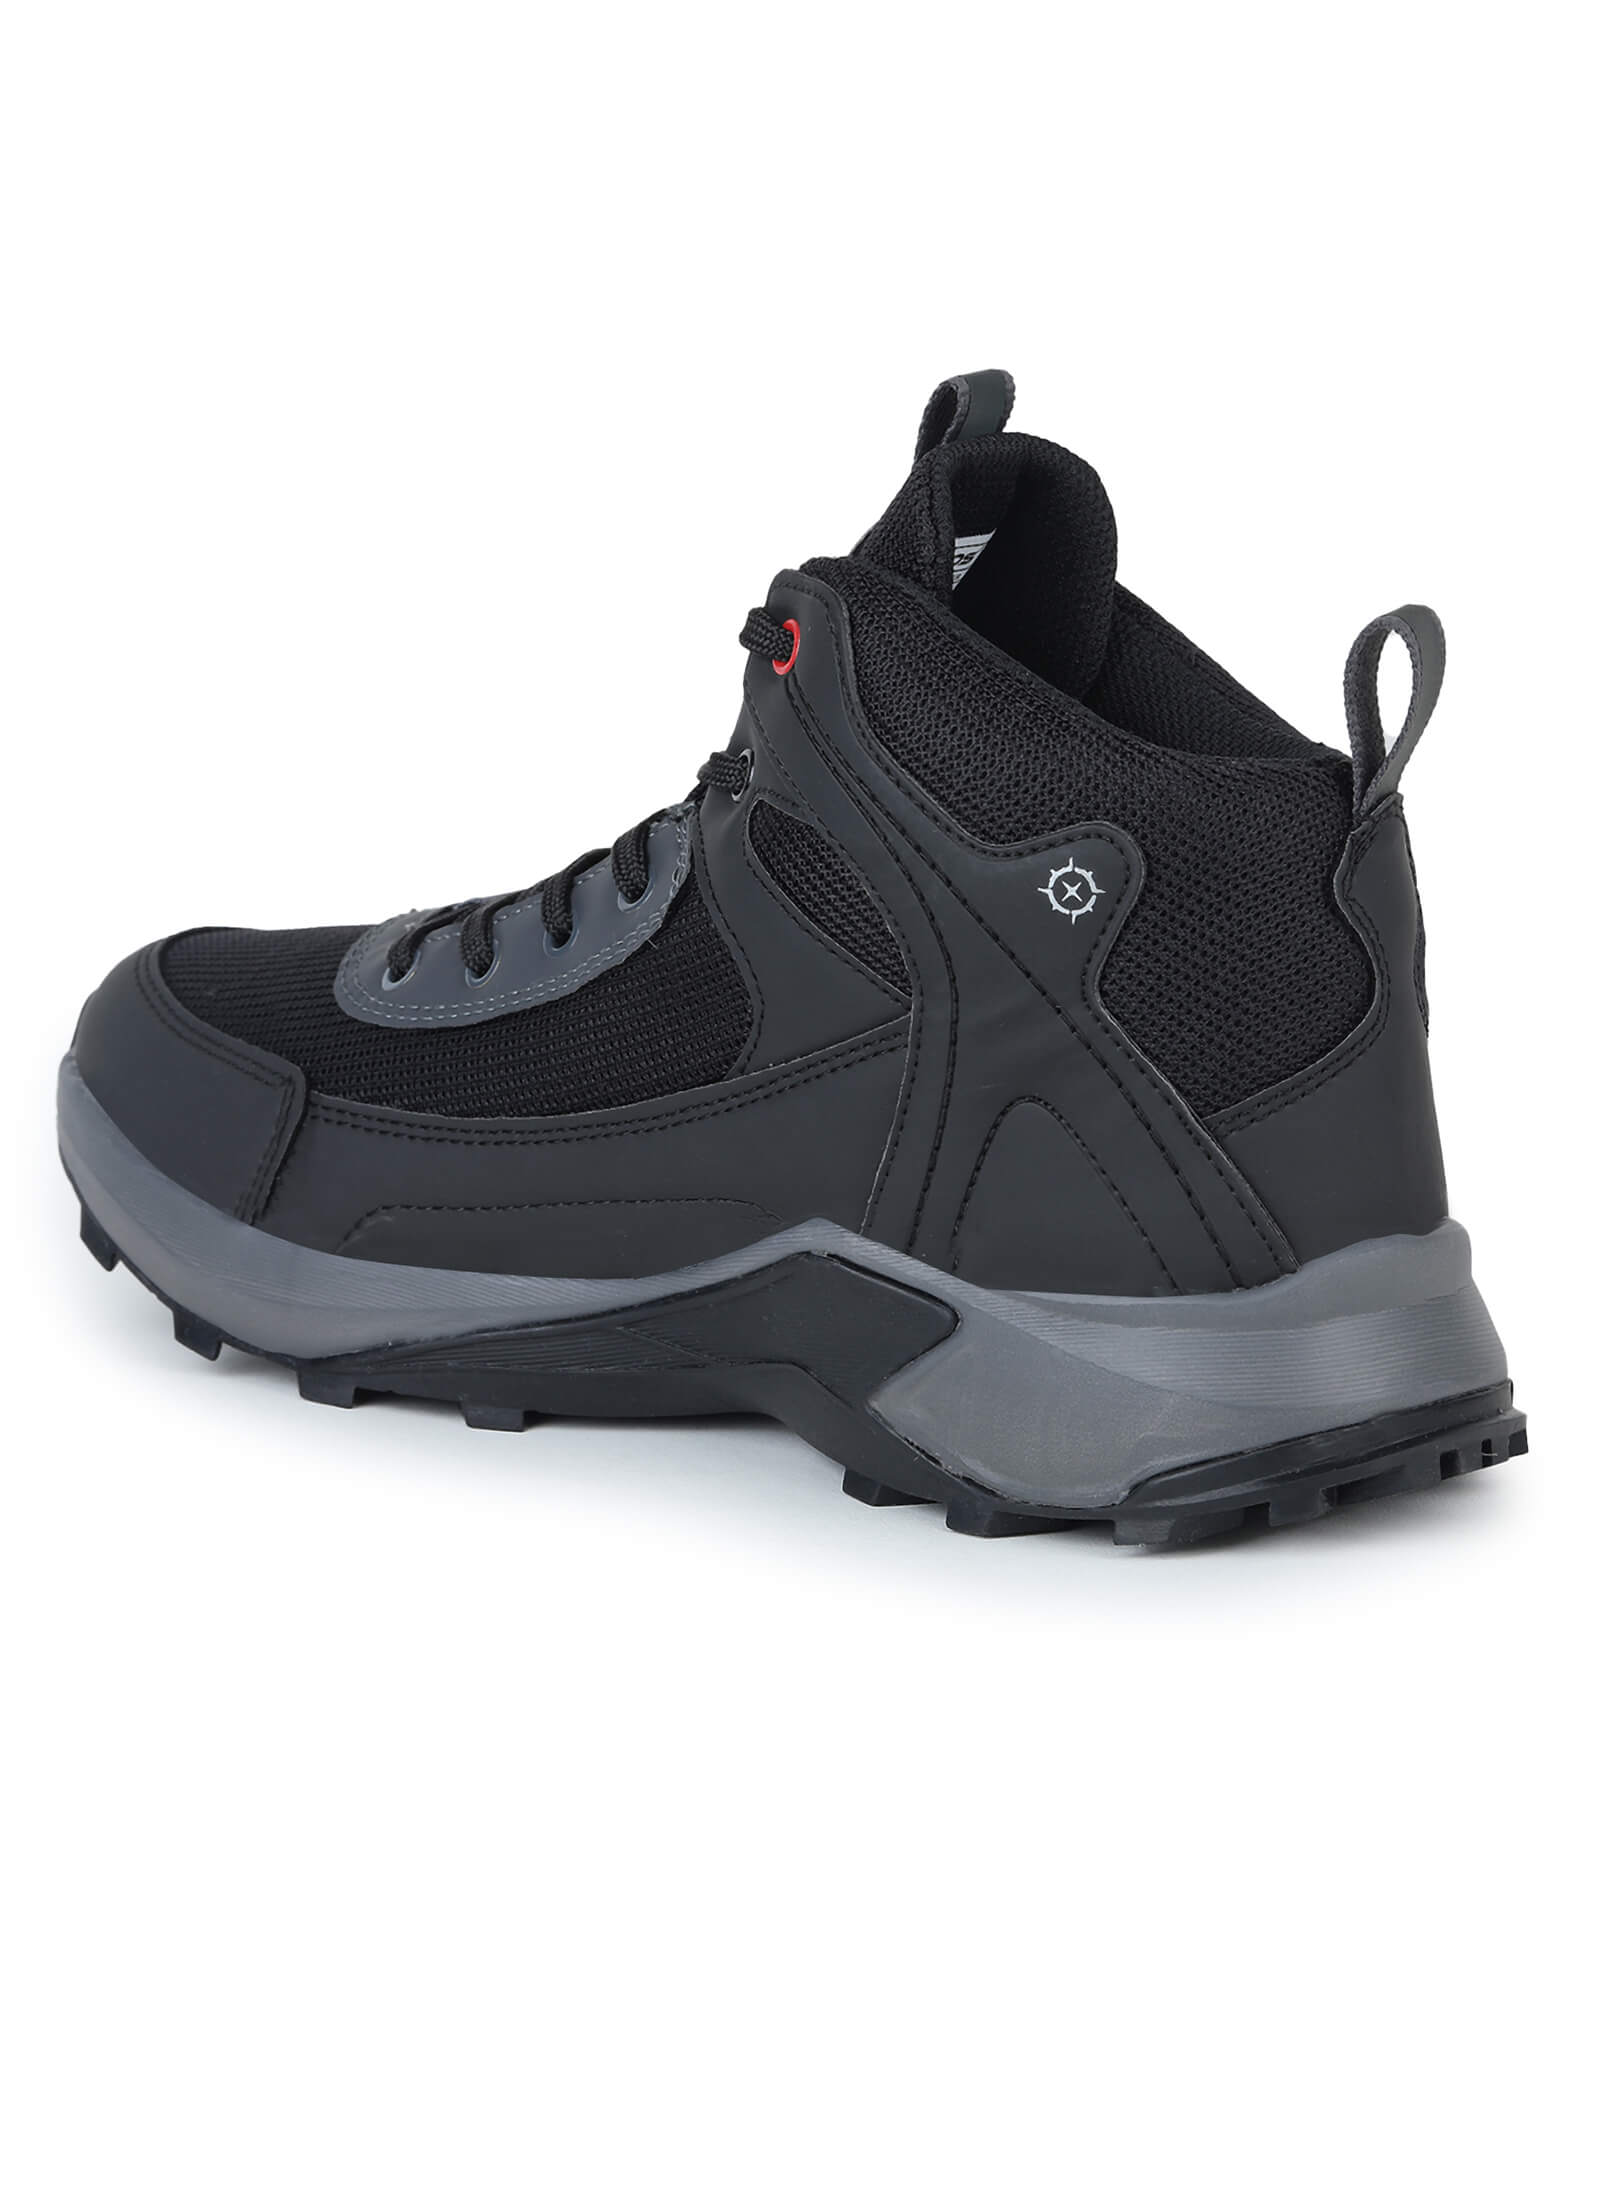 Safari Trekking Shoes/Anti-Slip Sports Shoes for Men